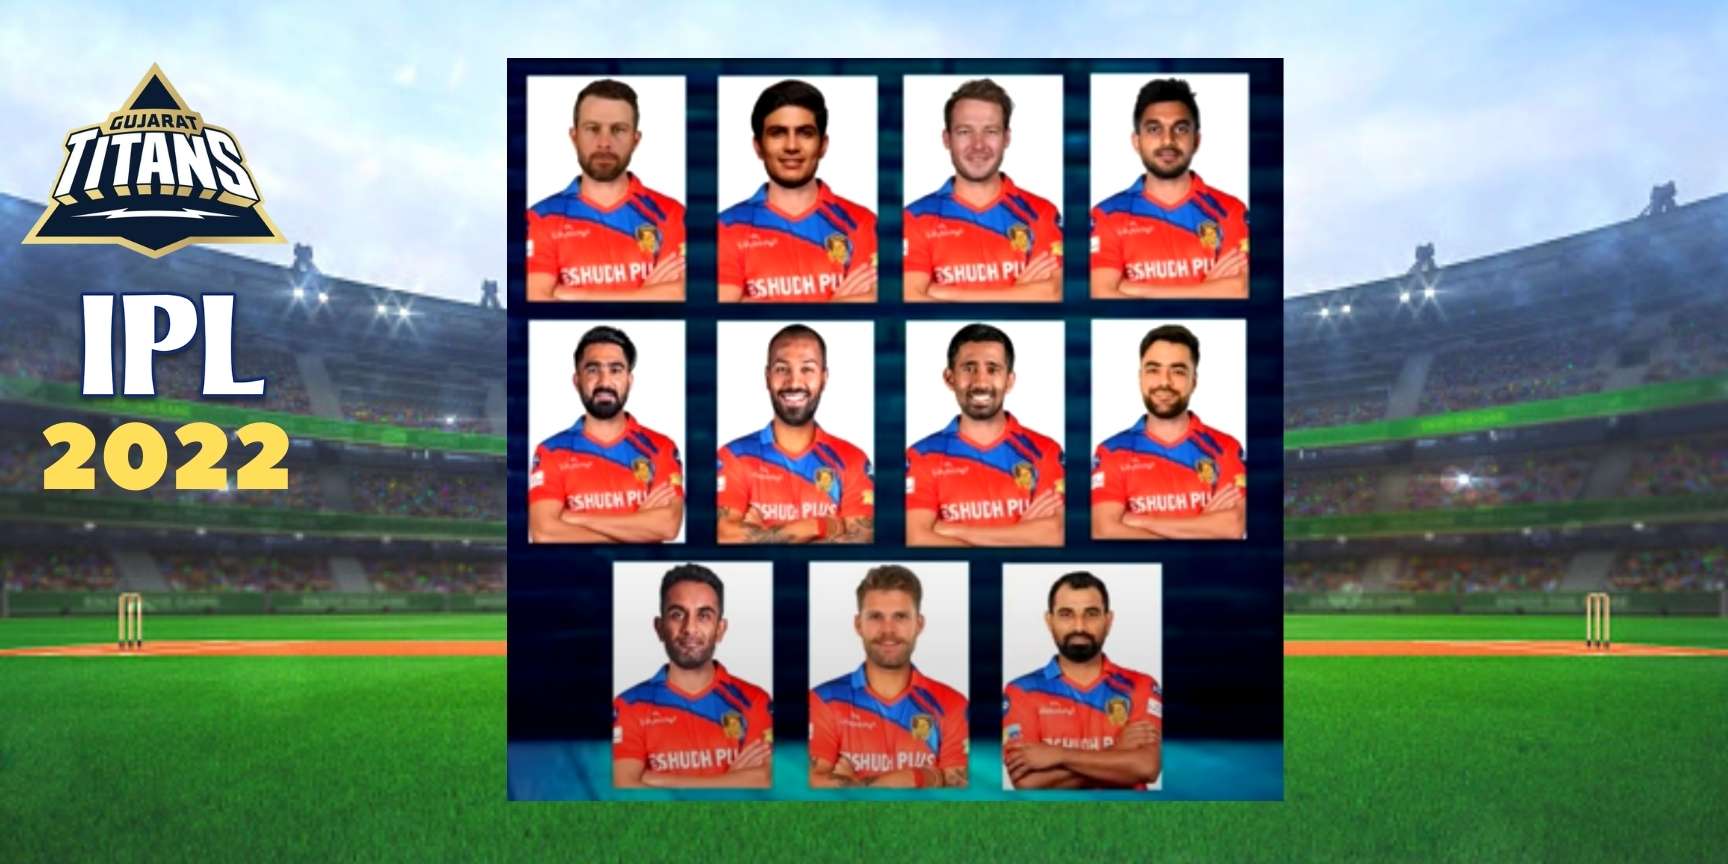 The Gujarat Titans IPL 2022 final squad